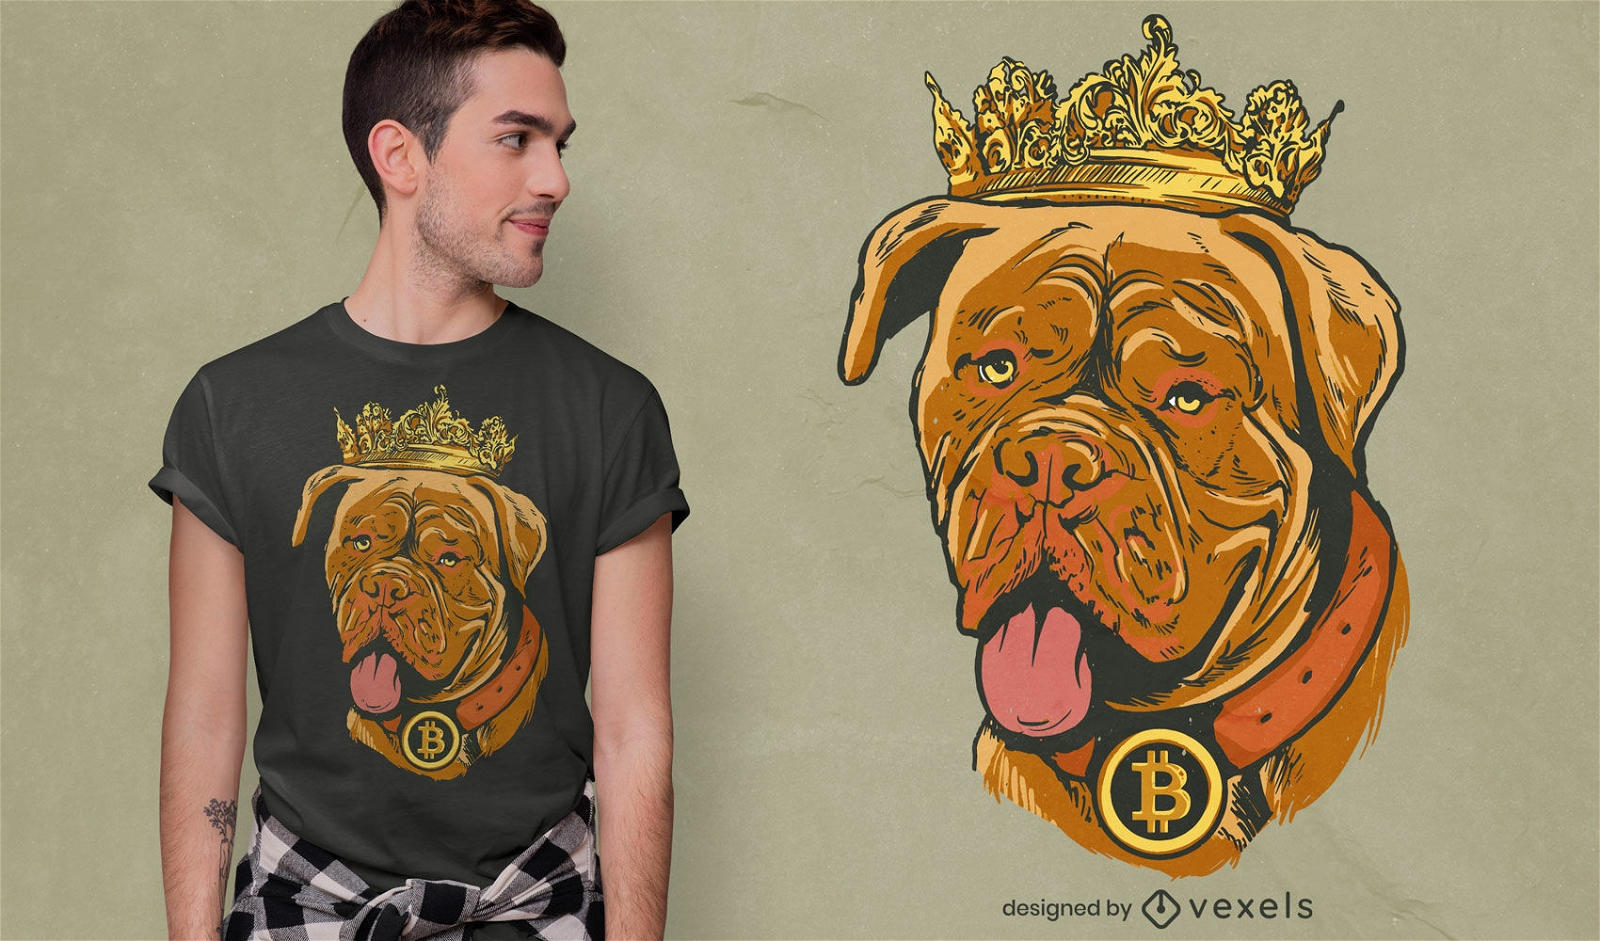 Genial dise?o de camiseta de perro bitcoin